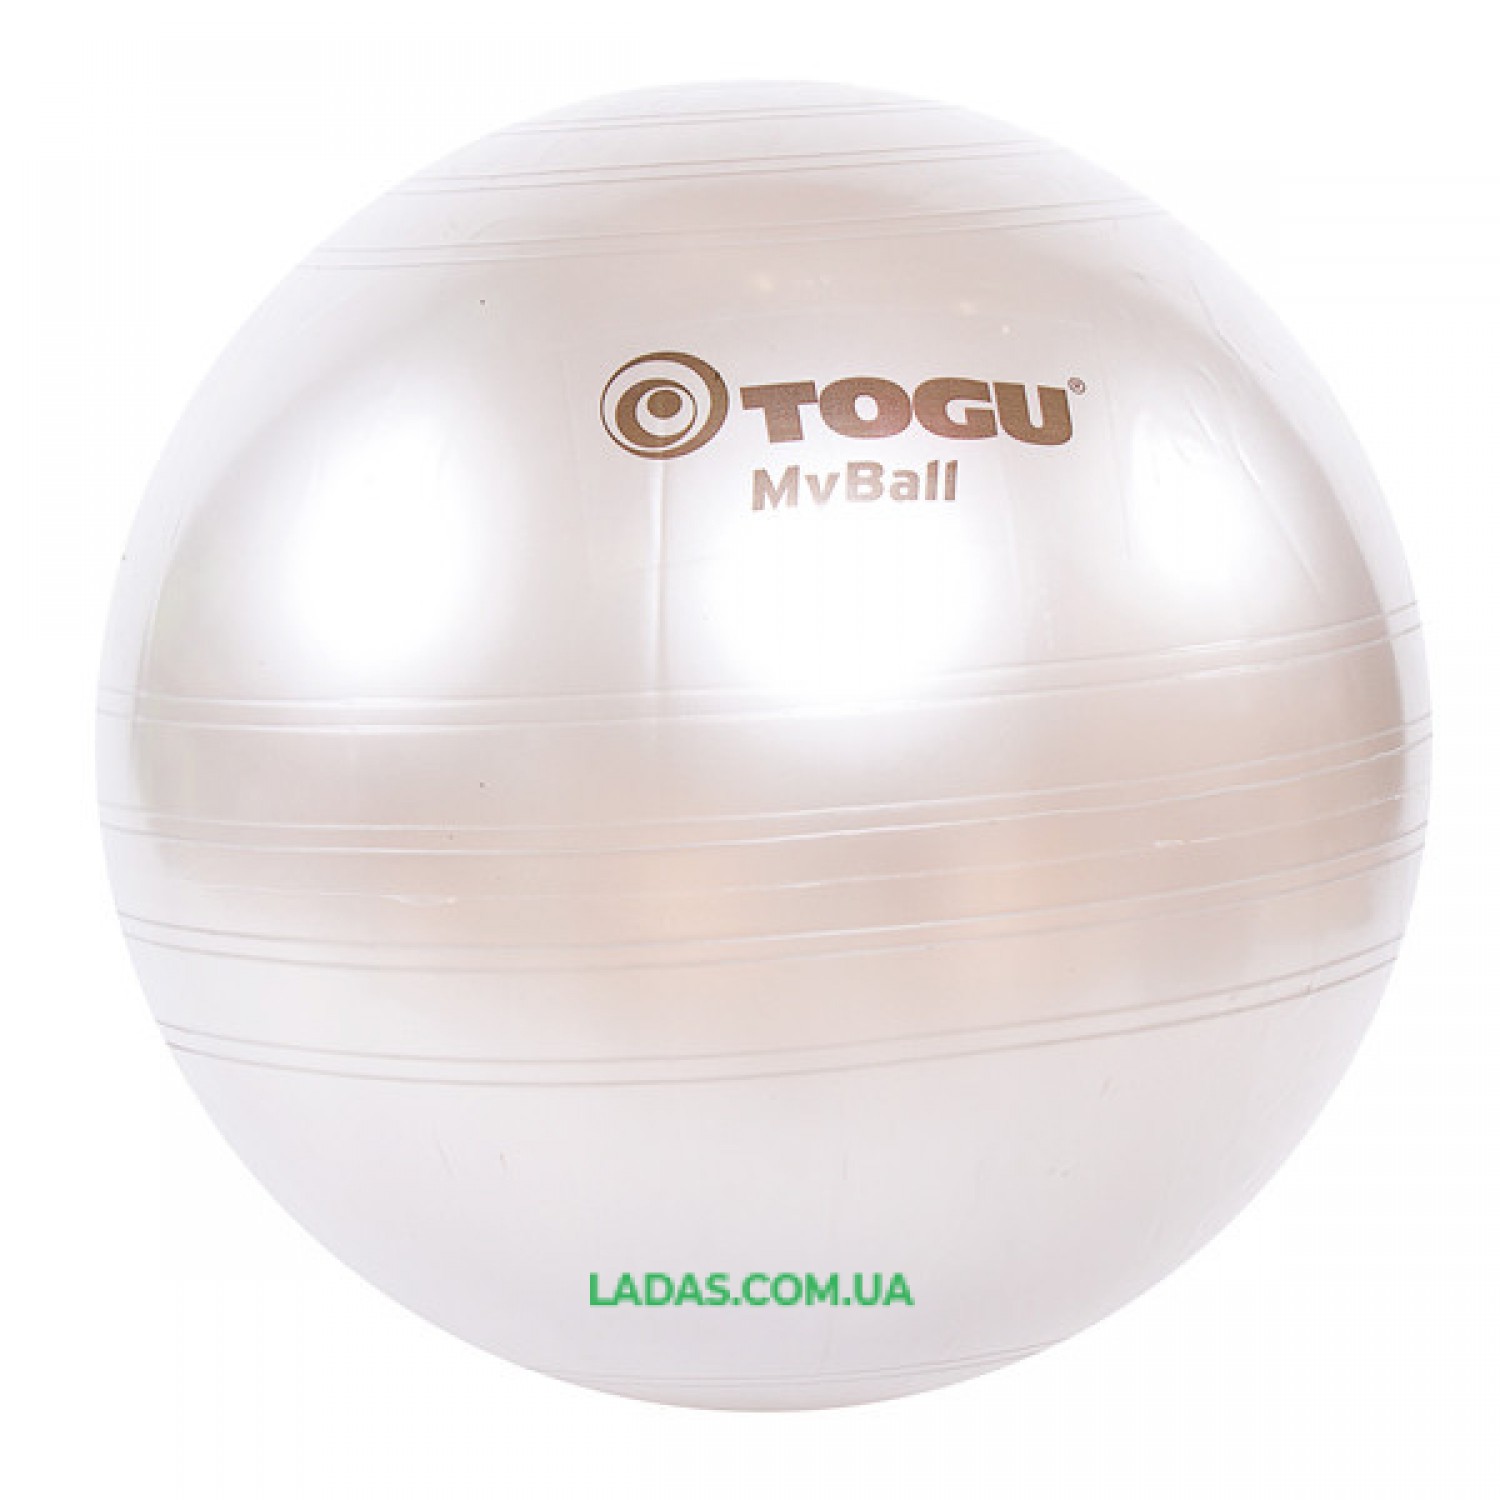 Мяч фитнес TOGU 75 см, MyBall, серебро